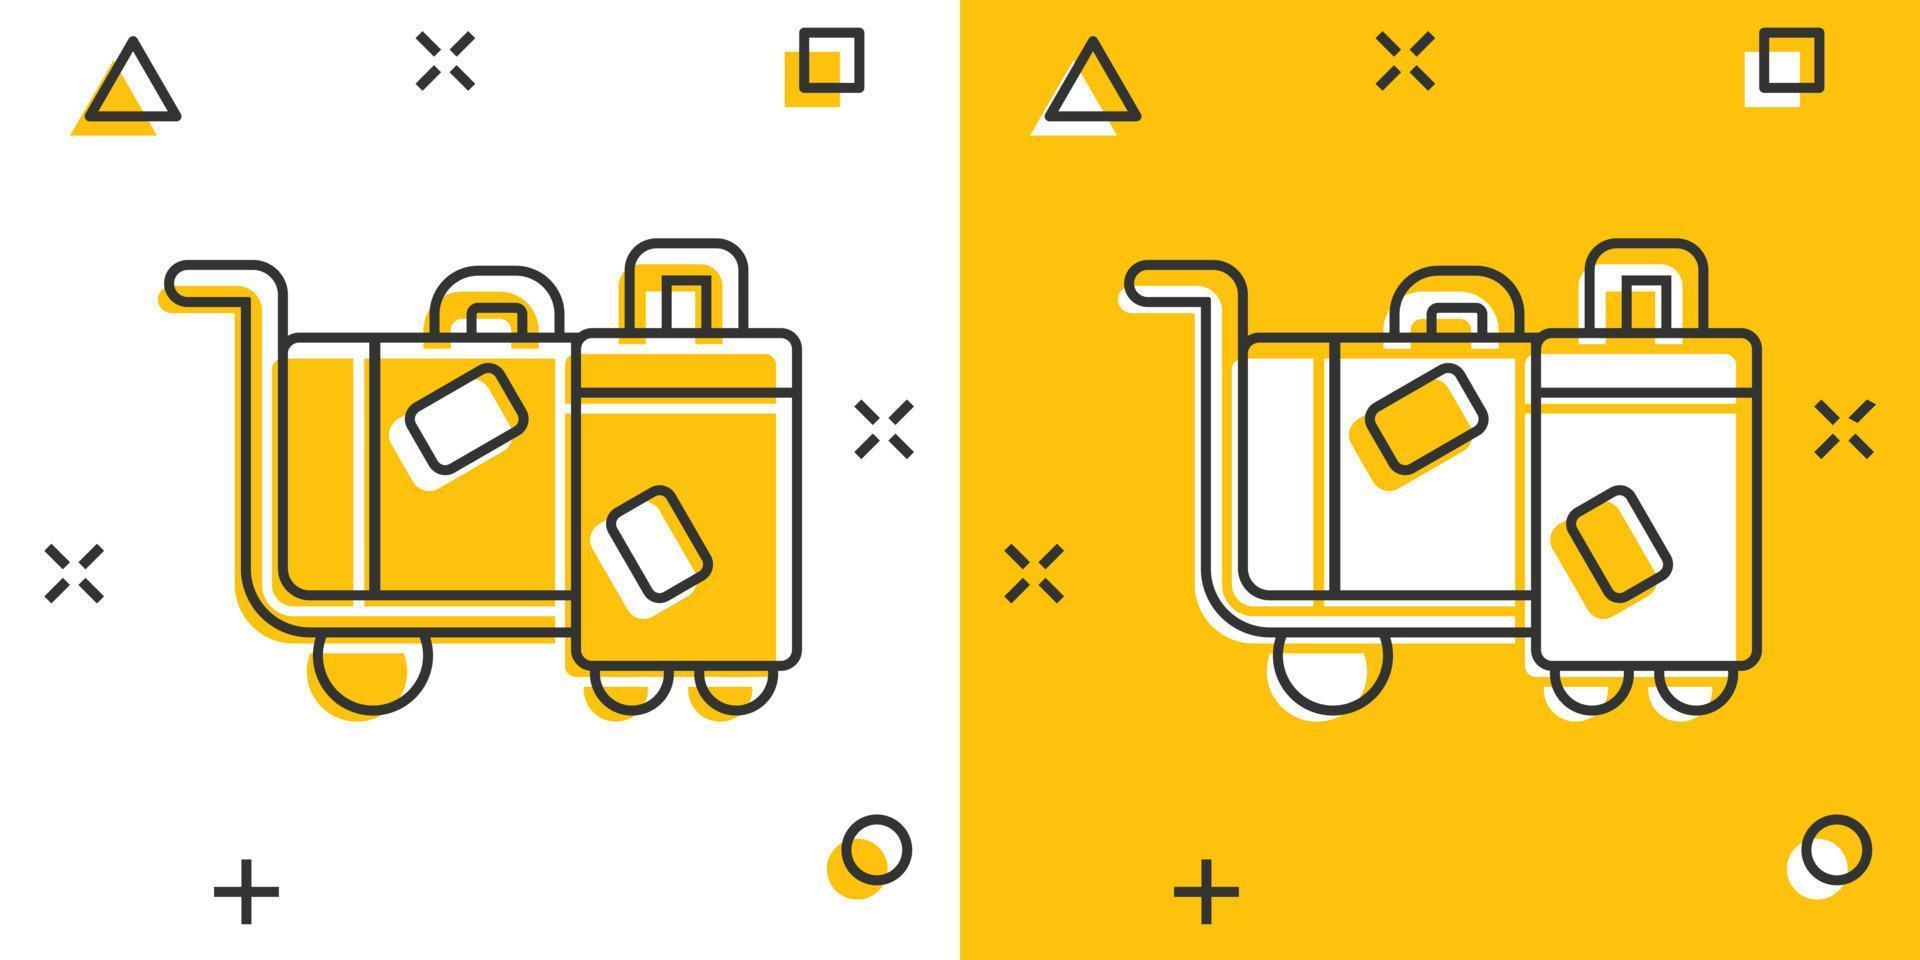 Reisetaschen-Symbol im Comic-Stil. Gepäckkarikatur-Vektorillustration auf weißem lokalisiertem Hintergrund. Geschäftskonzept mit Gepäckspritzeffekt. vektor